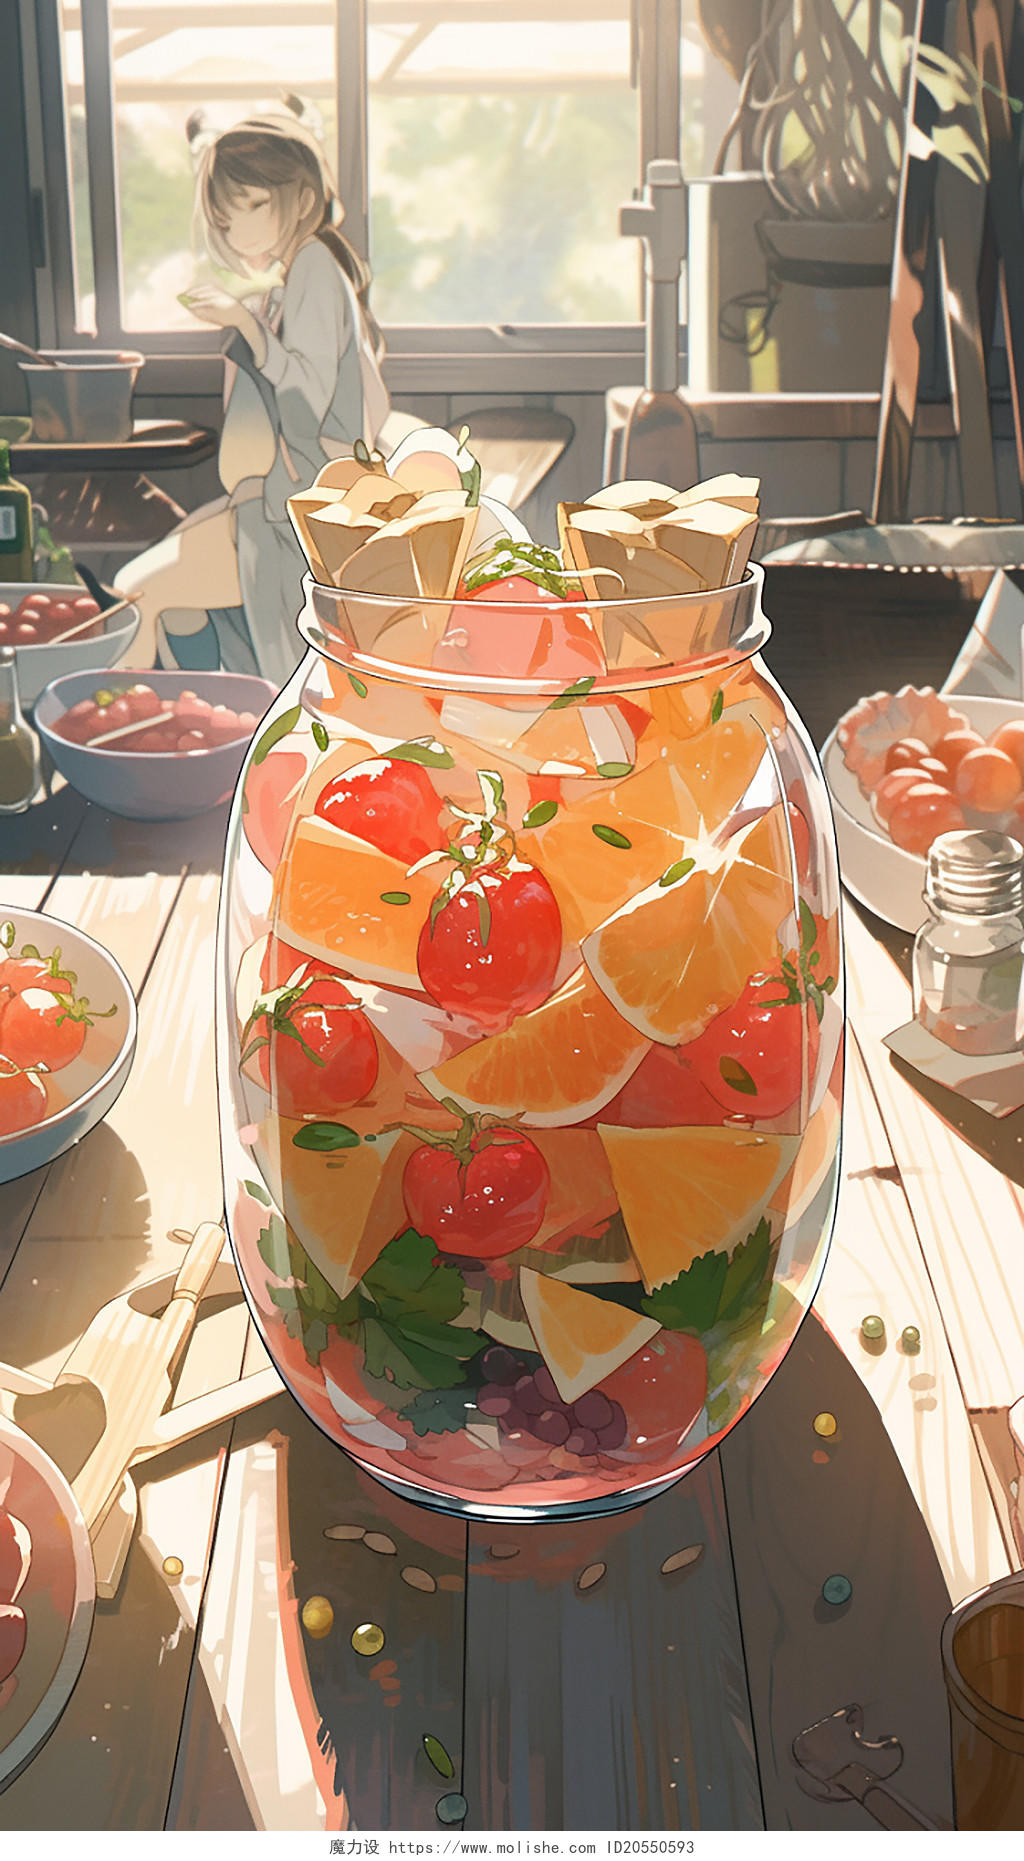 夏天果汁饮料水果冰淇淋动漫二次元下午茶插画人物场景